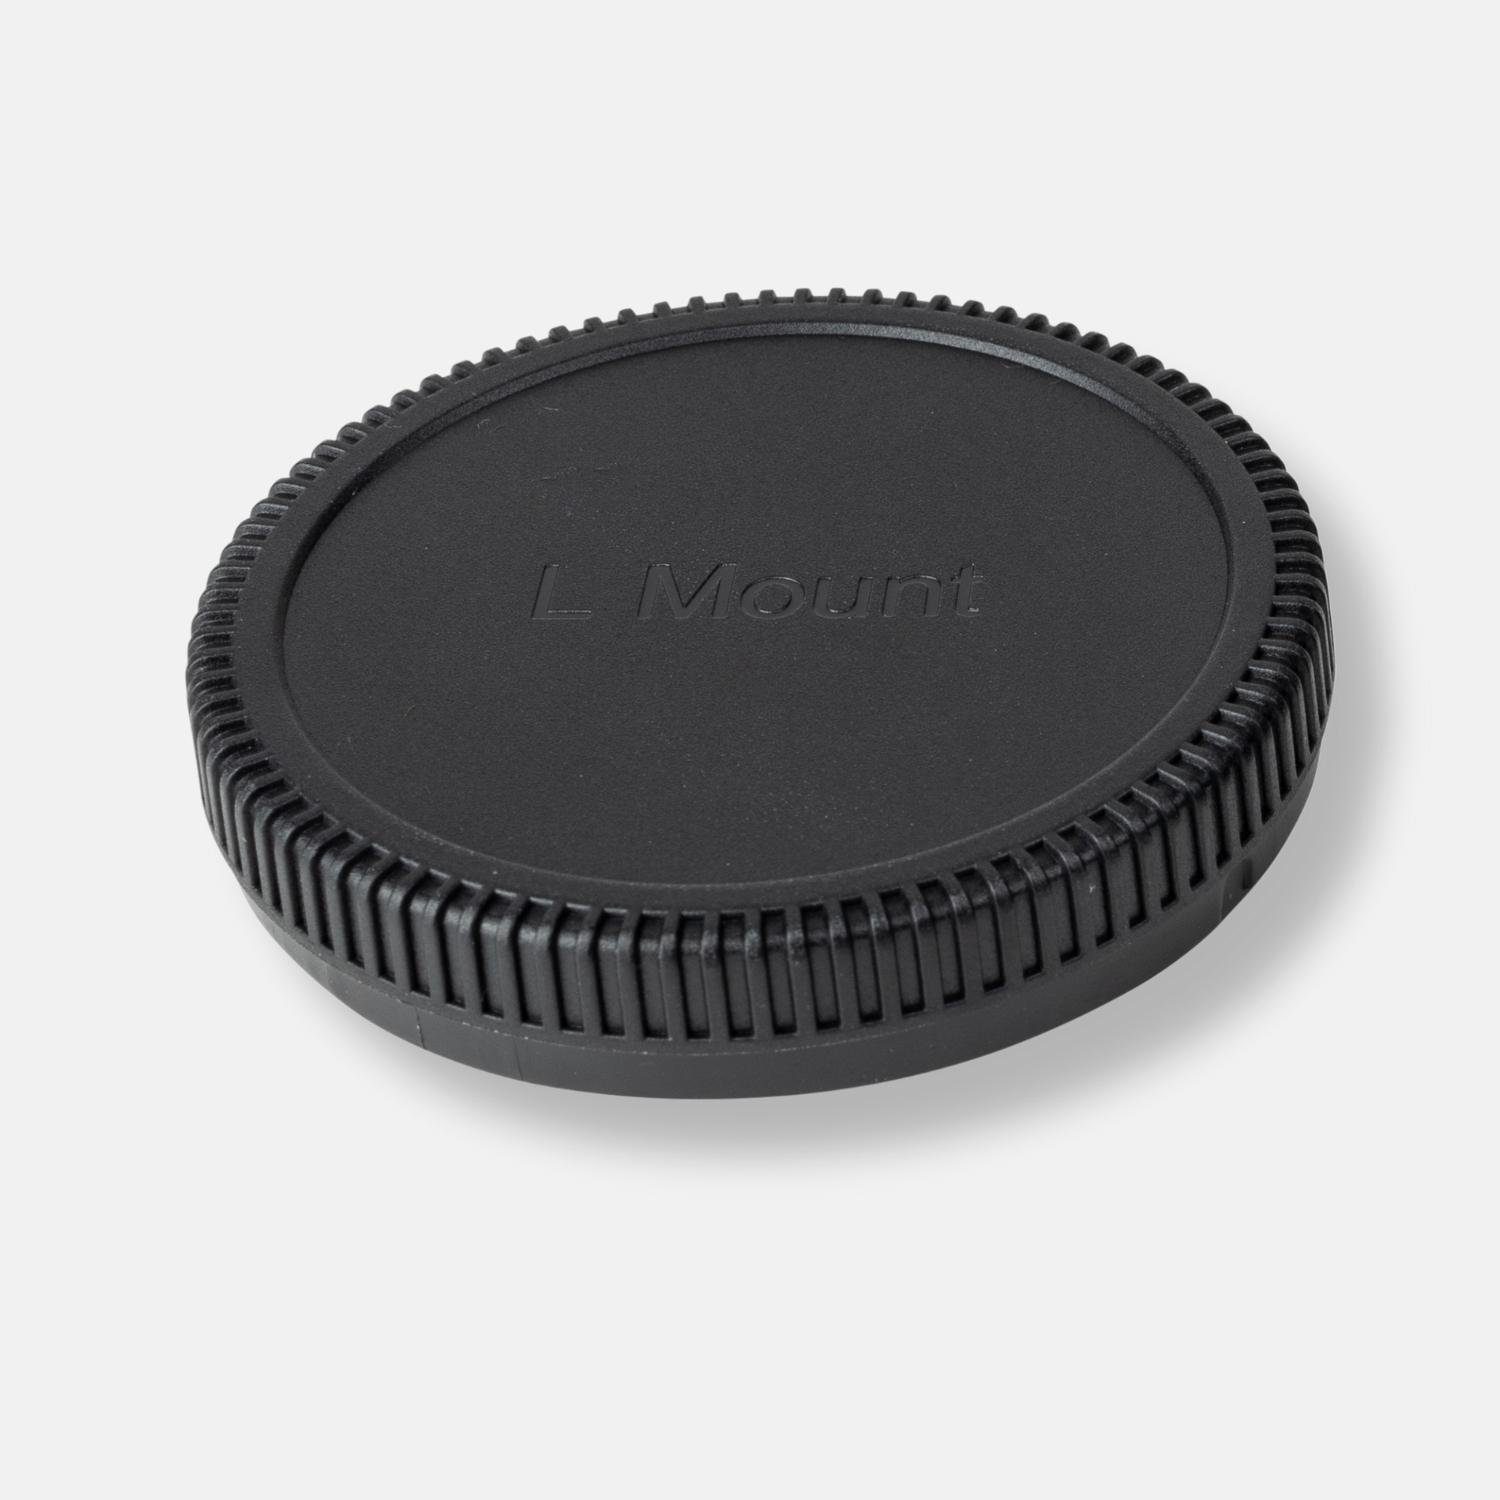 Lens-Aid Objektivrückdeckel Objektivrückdeckel für Panasonic L-Mount